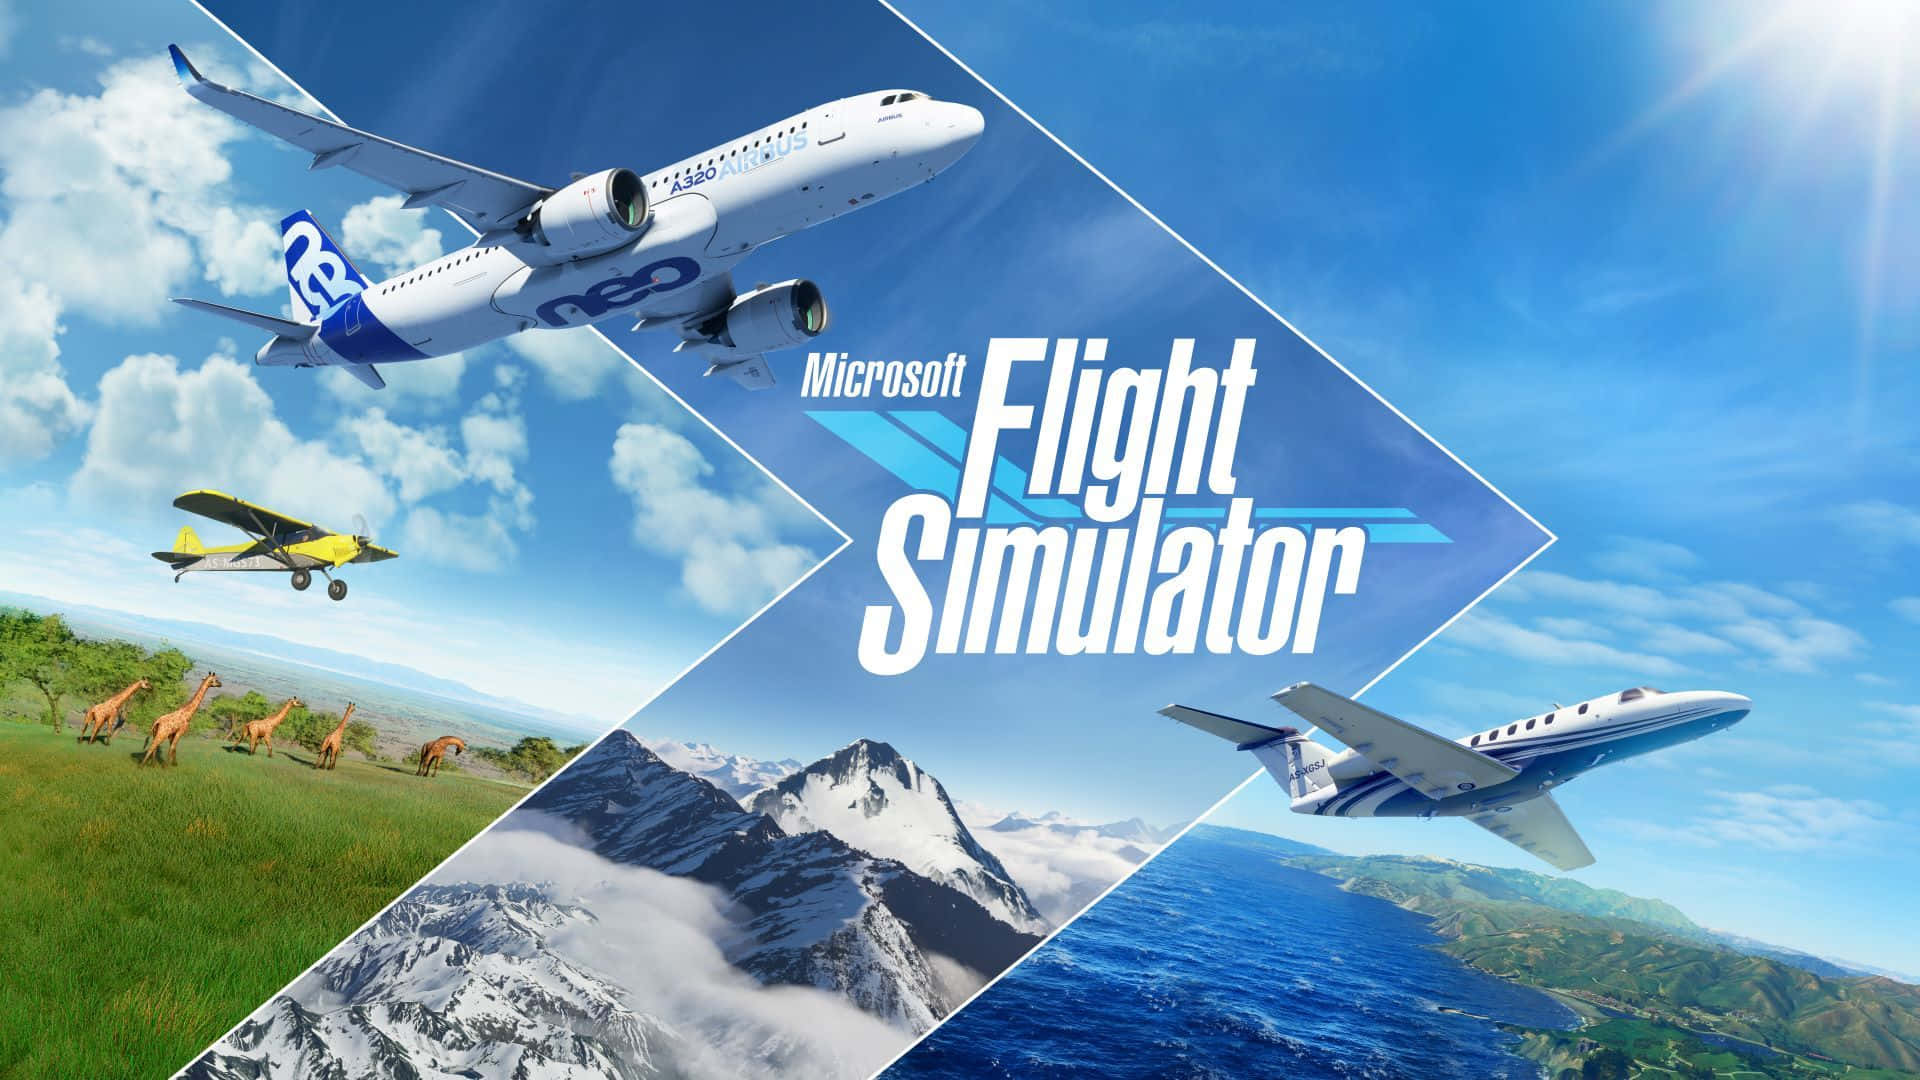 Envy Av Himlen Från Microsoft Flight Simulator.